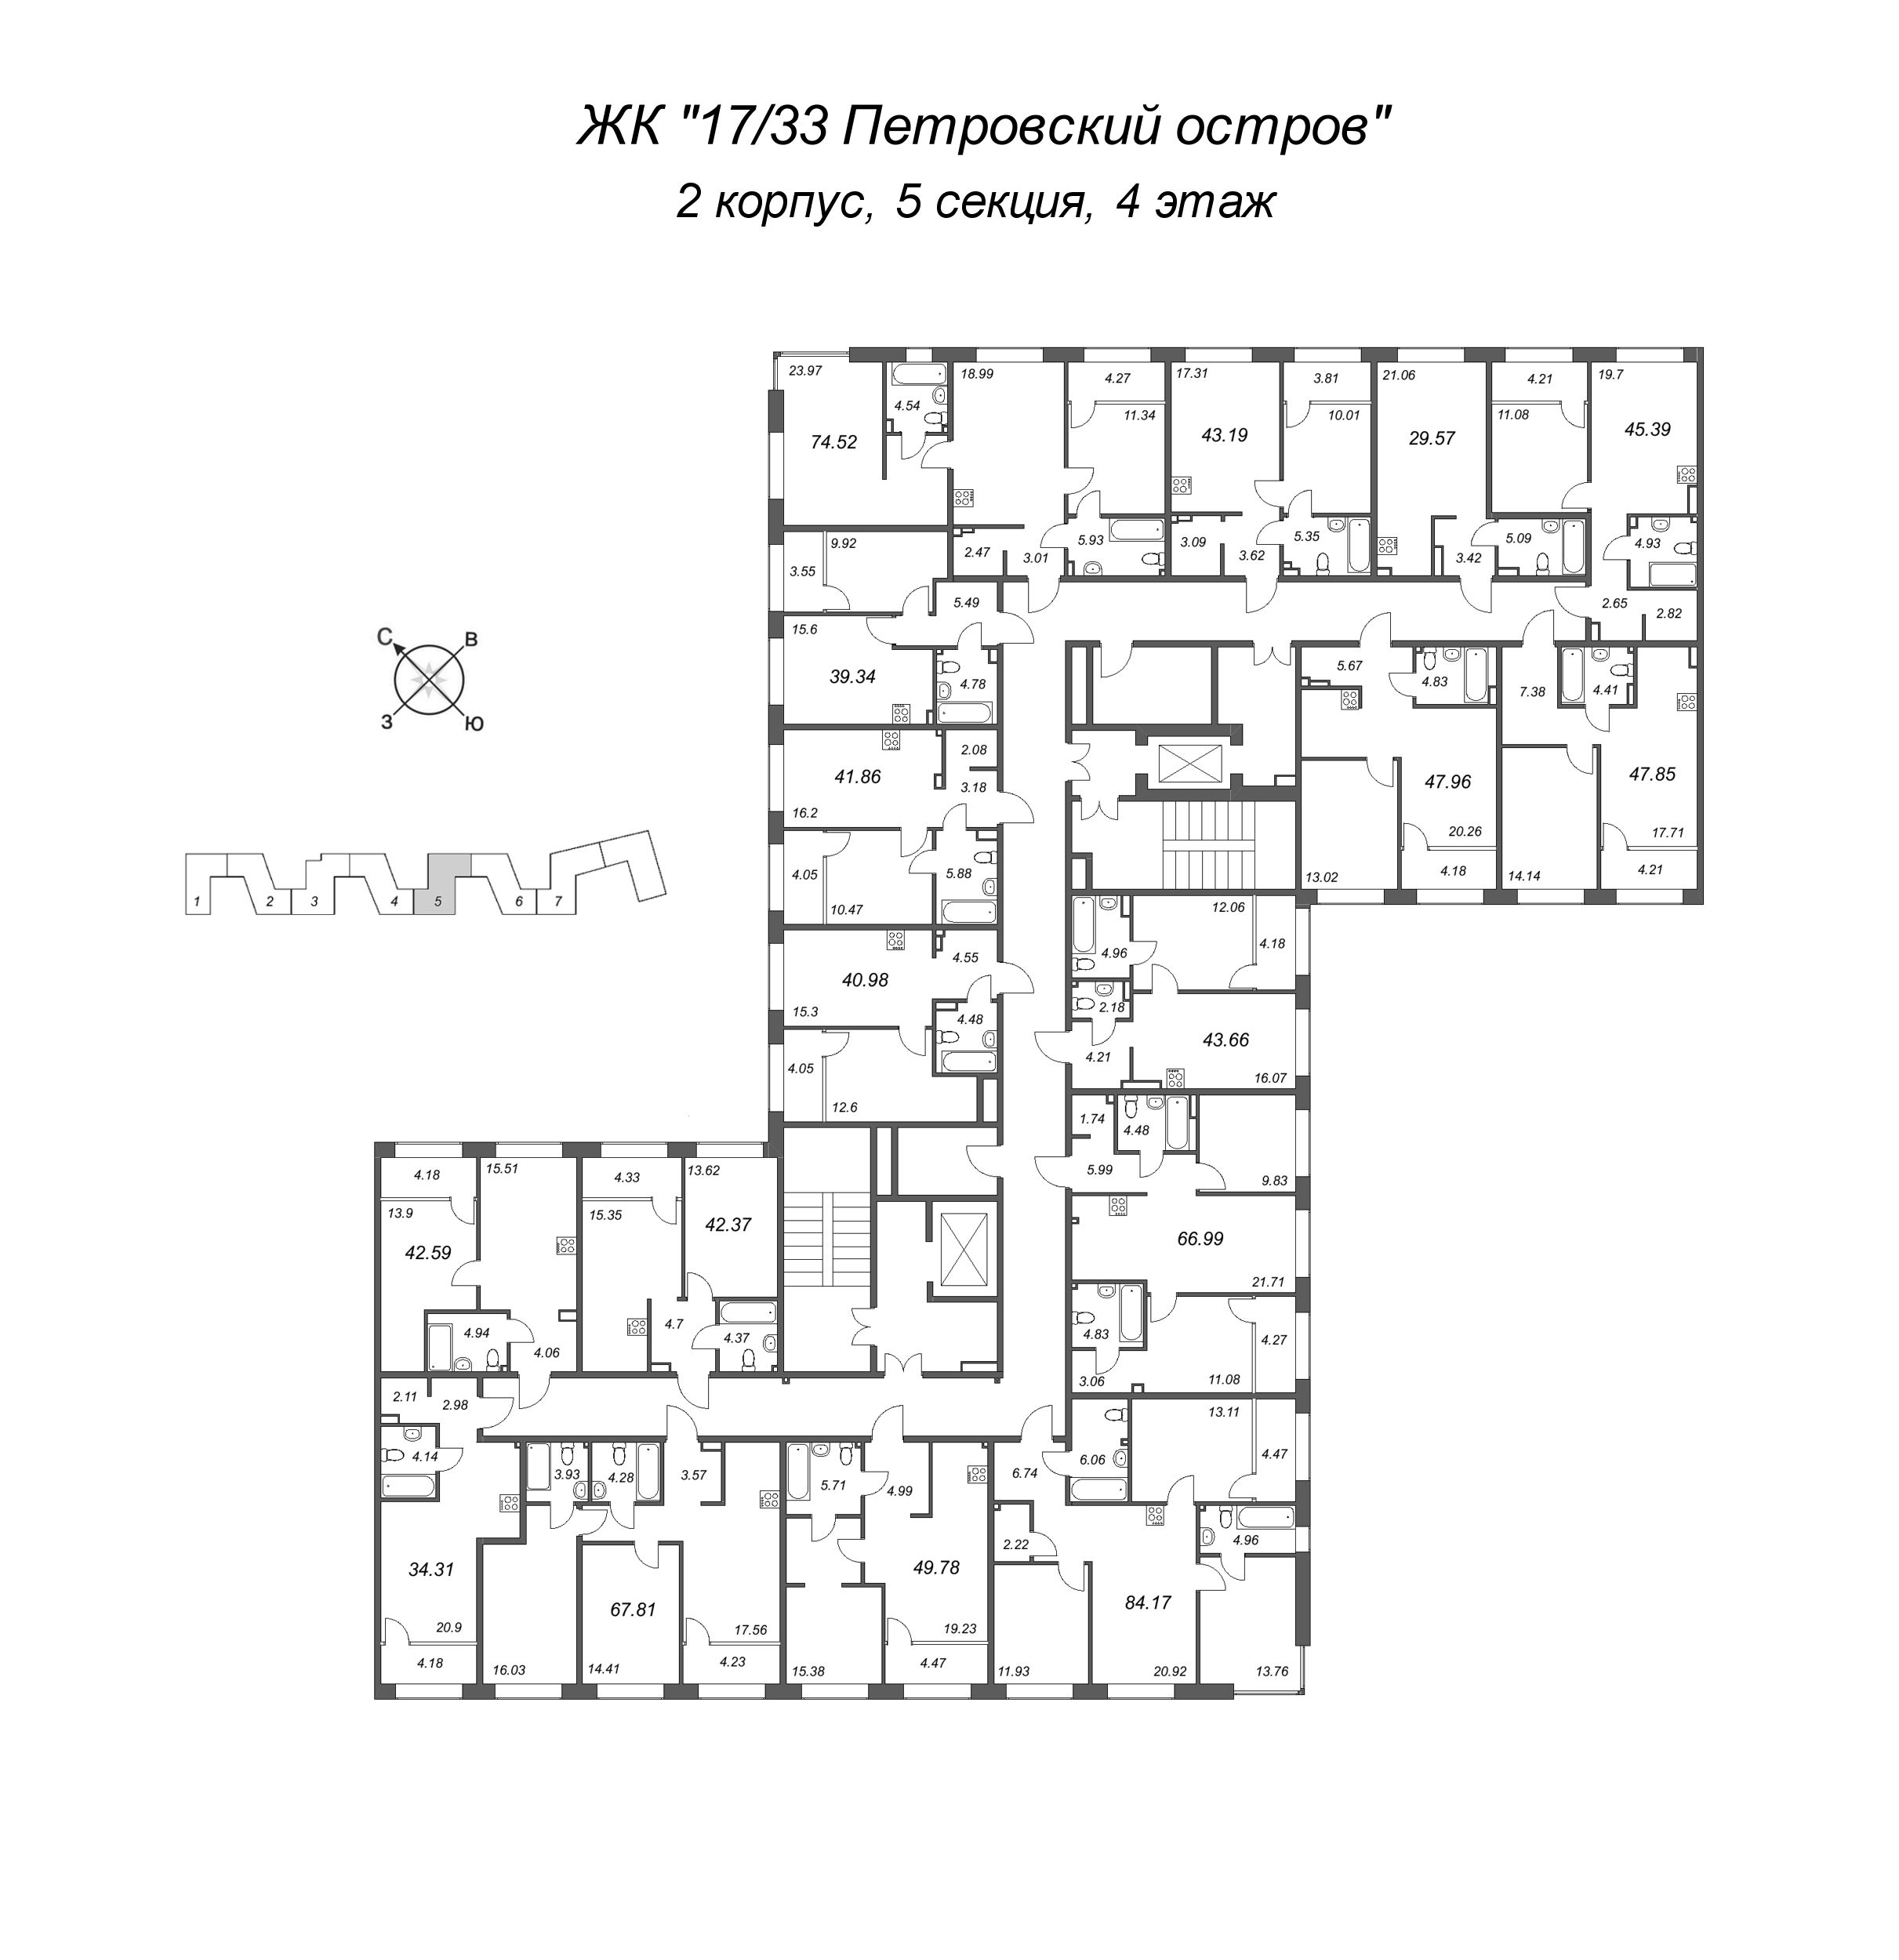 3-комнатная (Евро) квартира, 74.52 м² в ЖК "17/33 Петровский остров" - планировка этажа